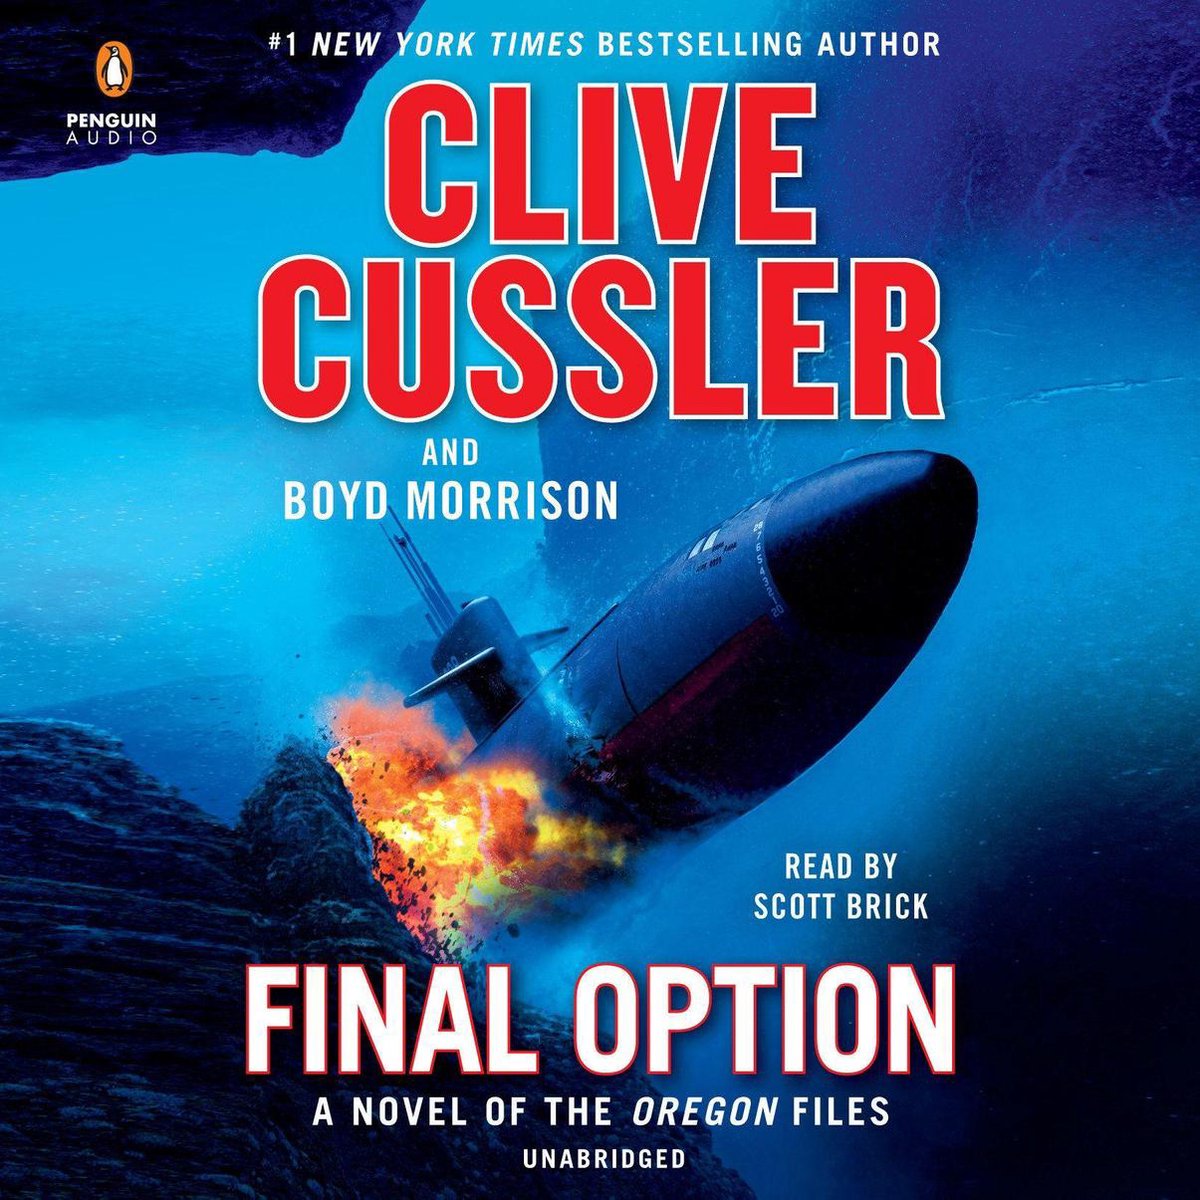 Final Option - Clive Cussler